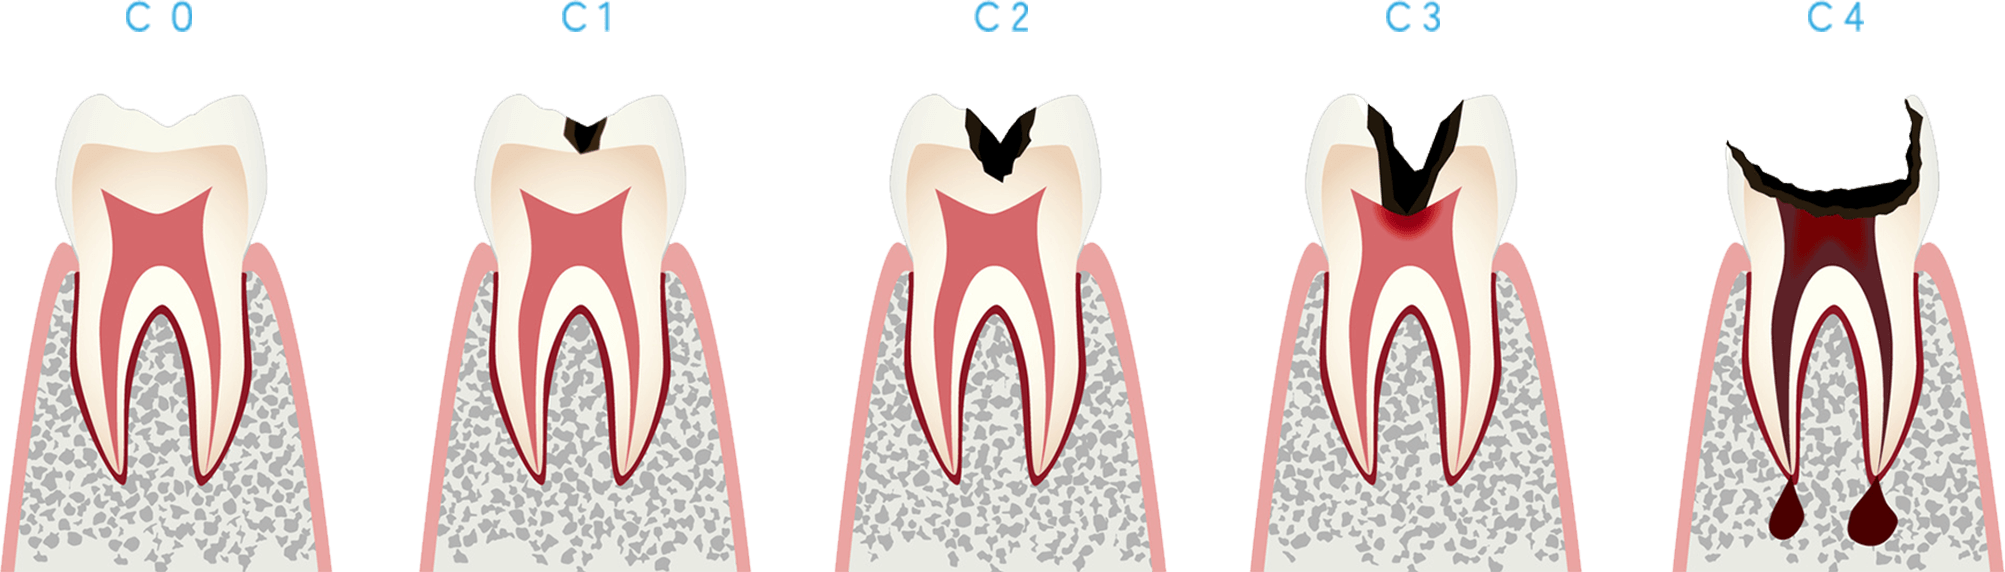 むし歯のステージと進行状態イメージ